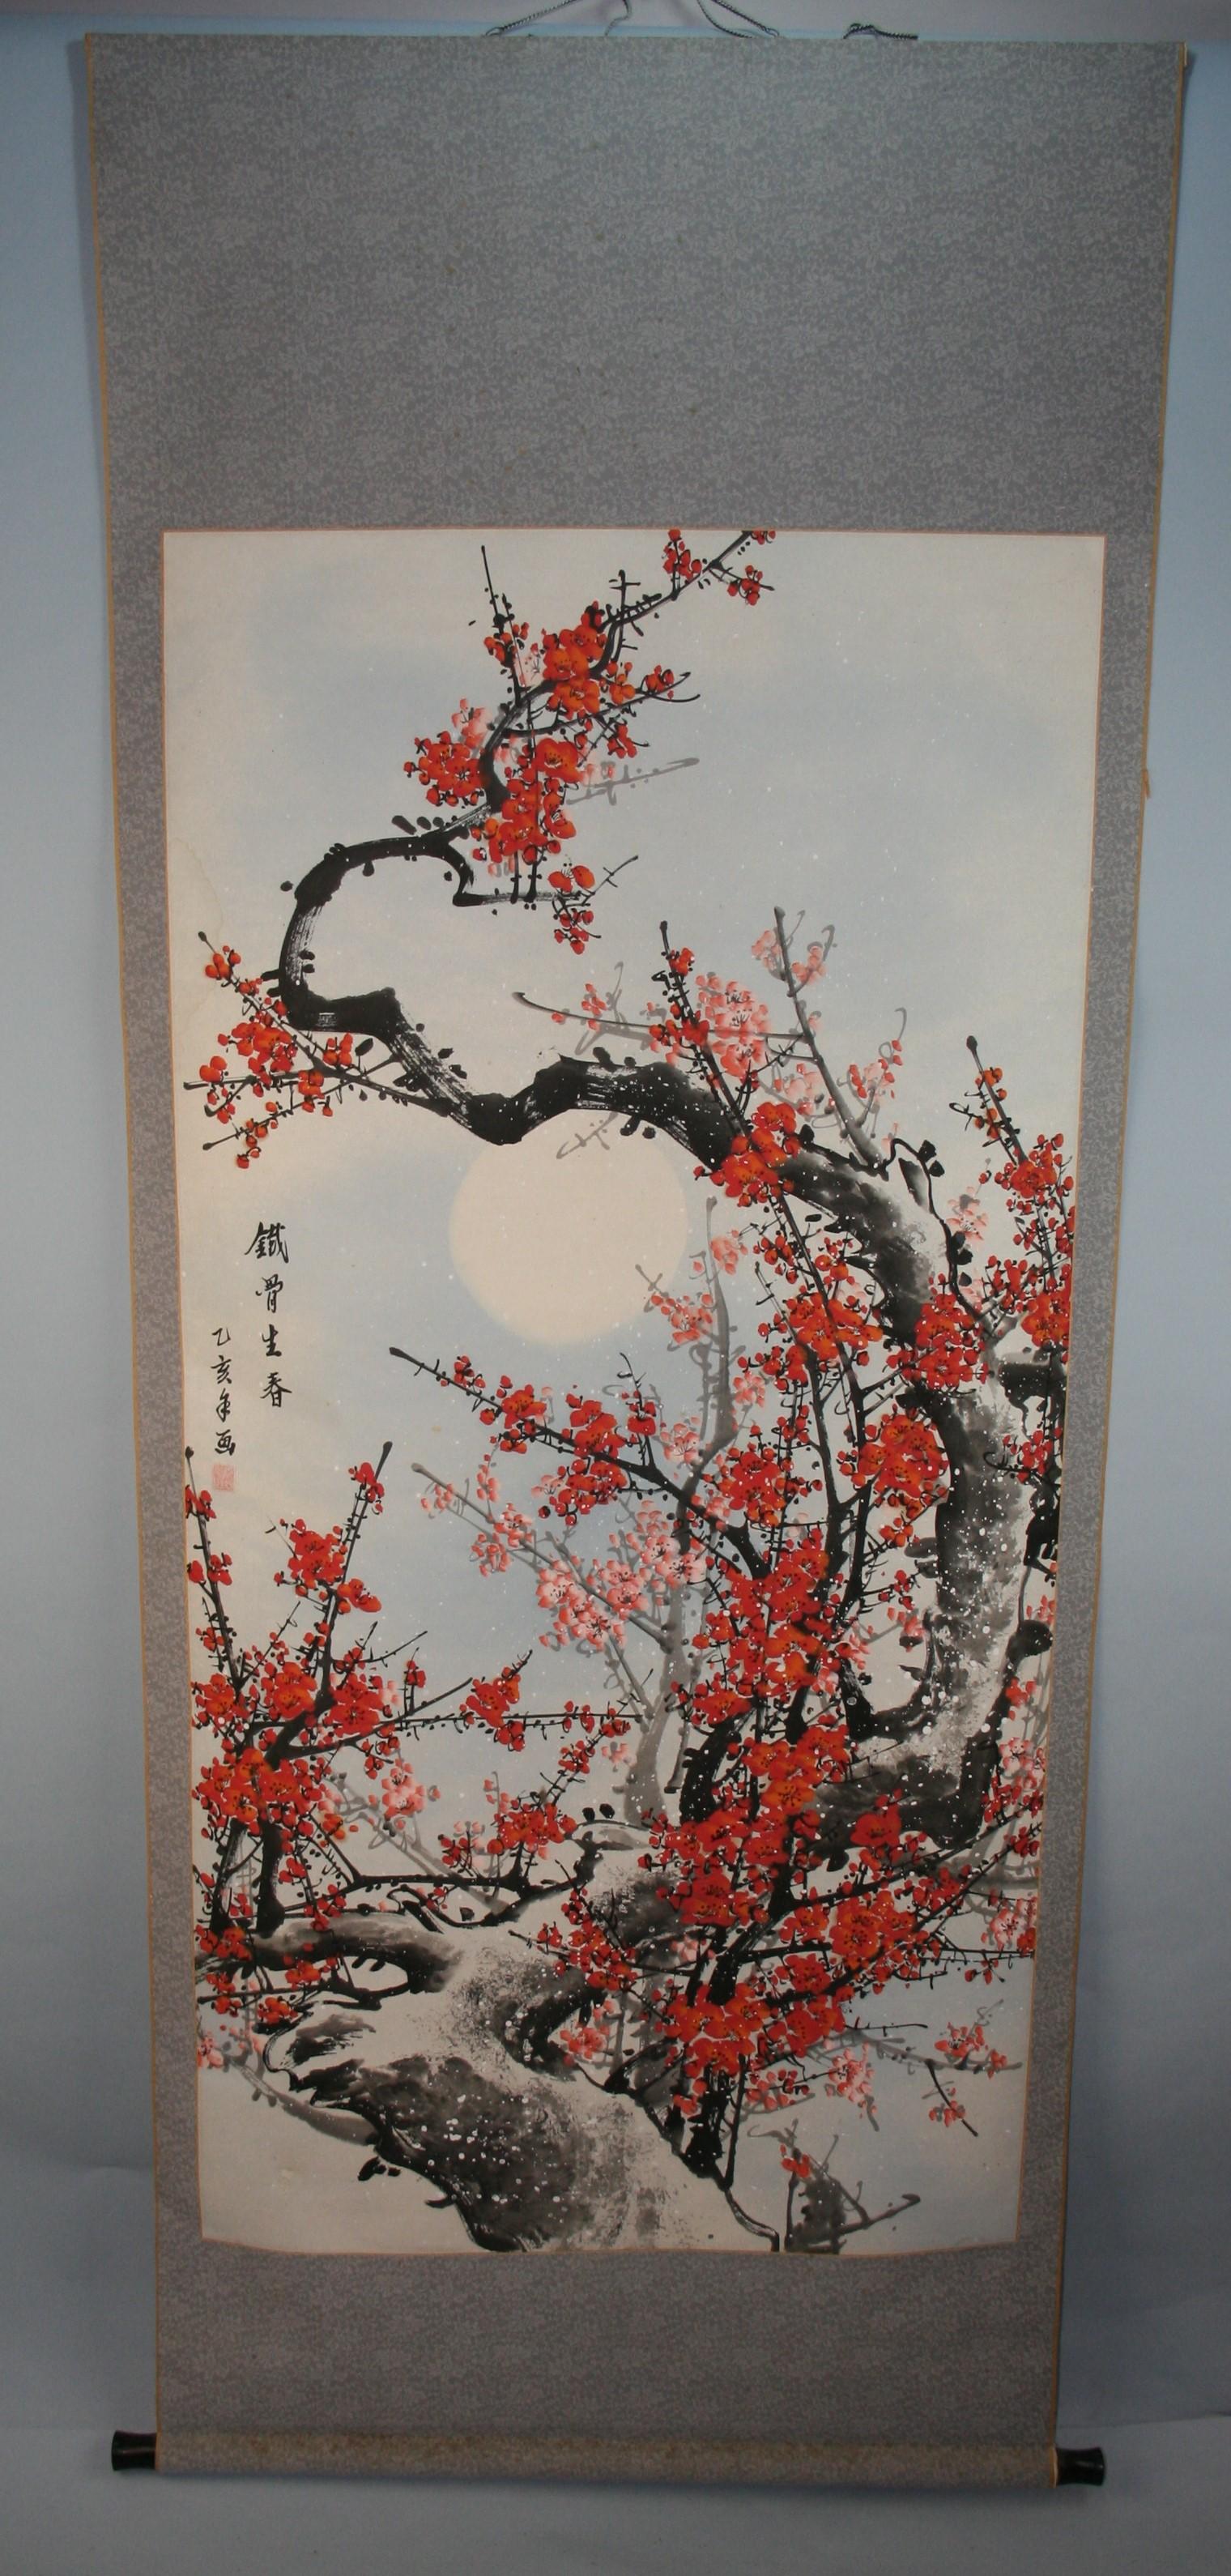 Handgemalte Schriftrolle mit Mond und Blumenblüten
Wird aufgerollt versandt 
Größe 28 x 72